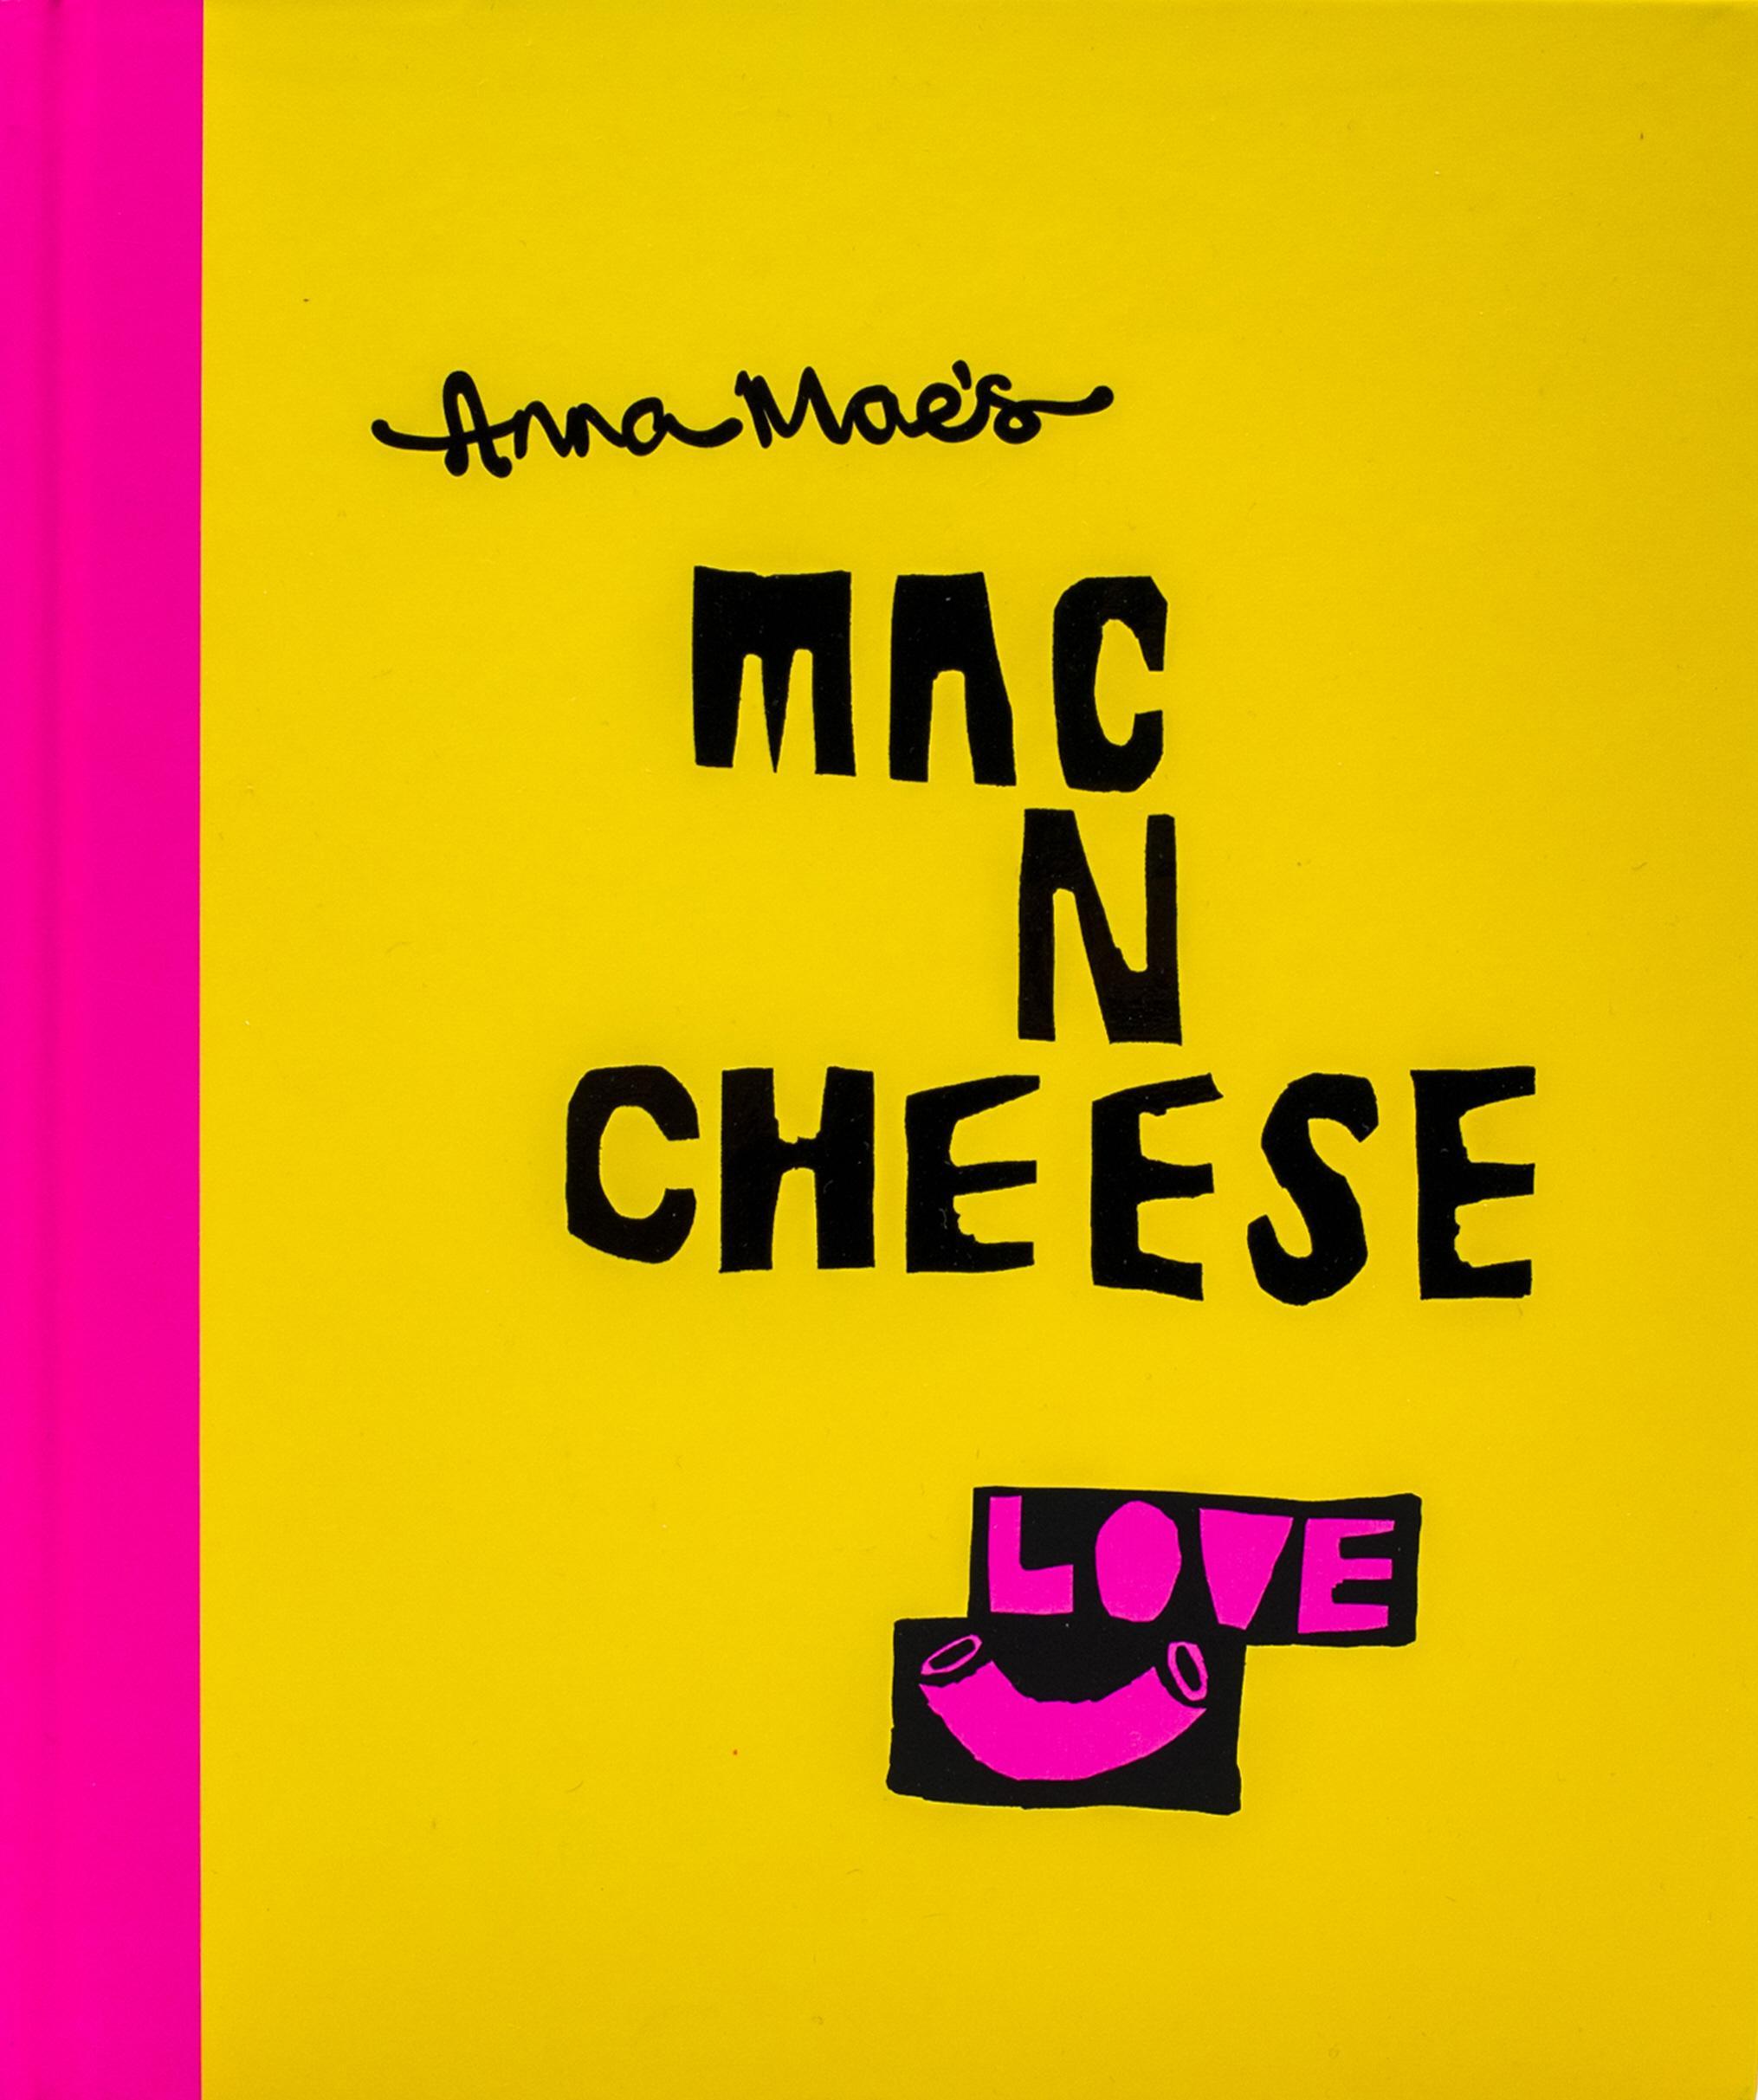 Anna Mae's Mac N Cheese - Anna Clark